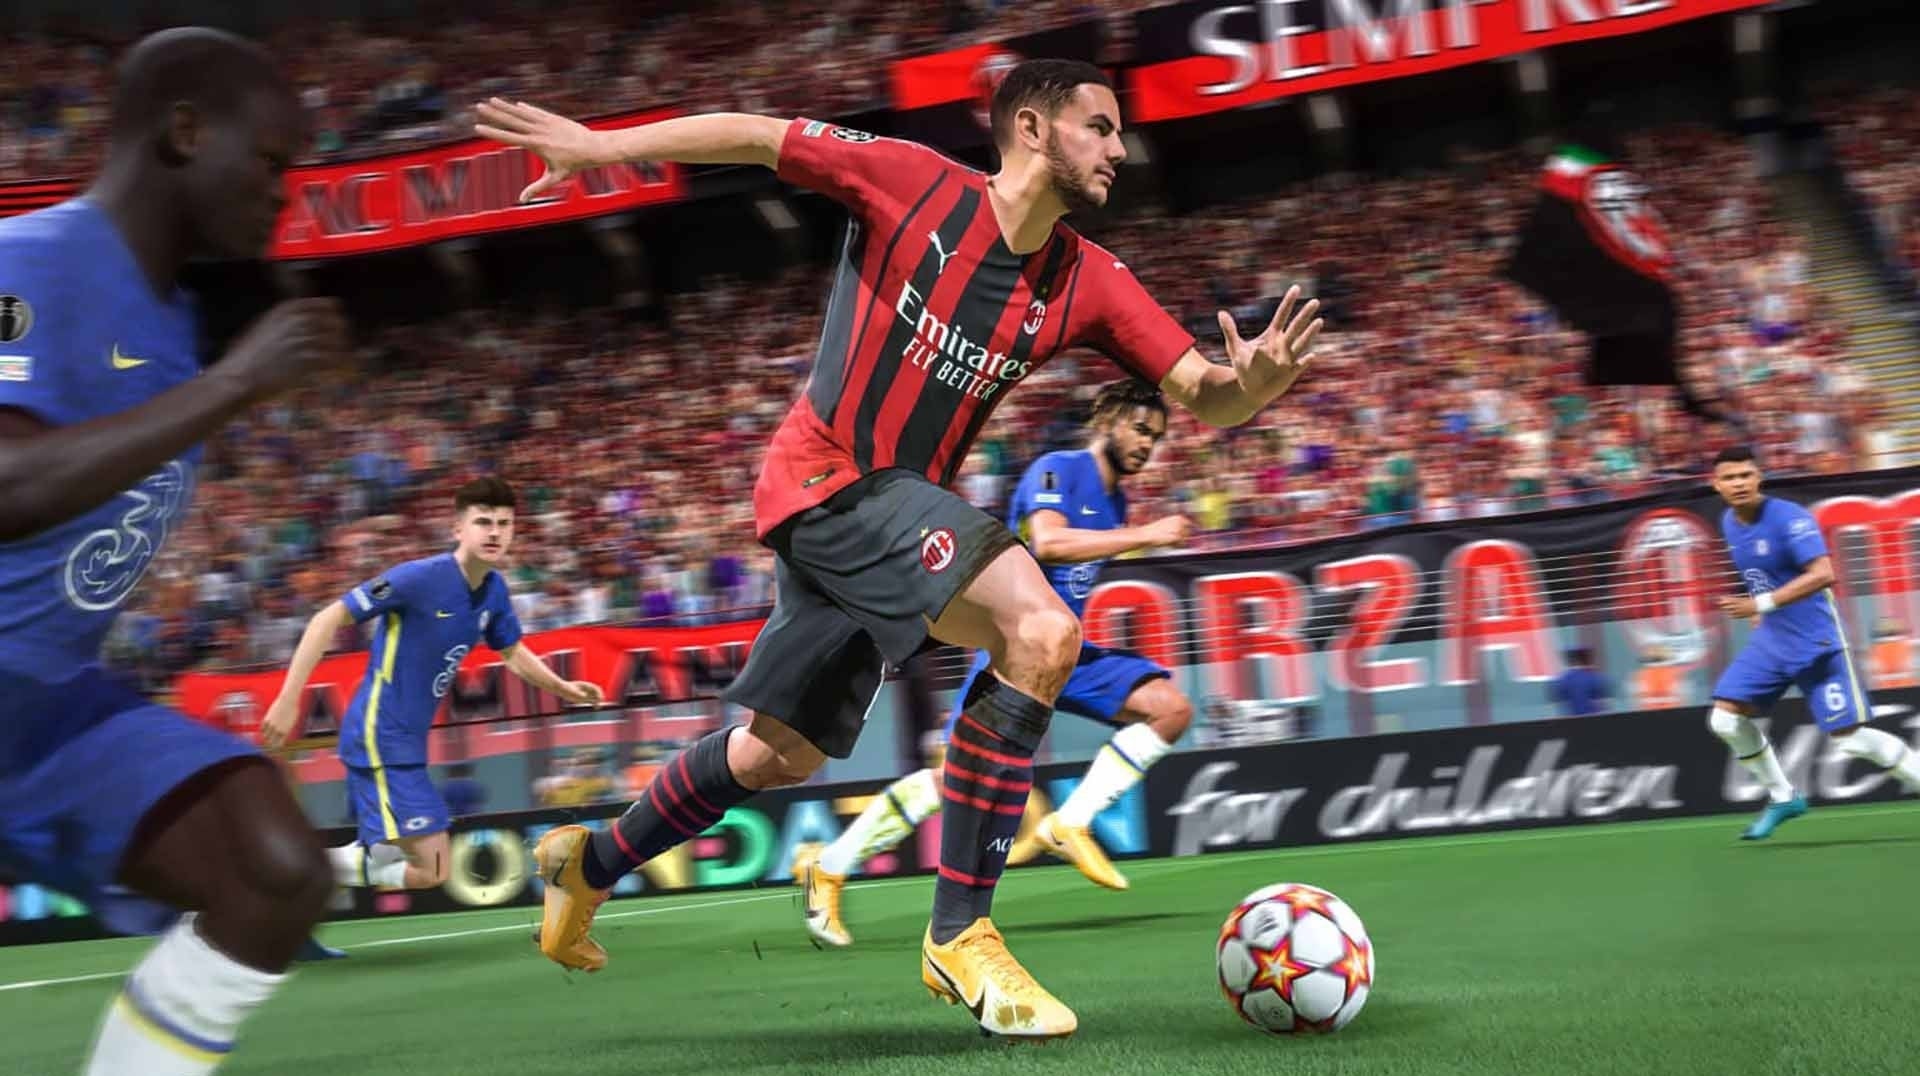 Bilder zu FIFA 22 Tipps und Tricks - Die große Übersicht